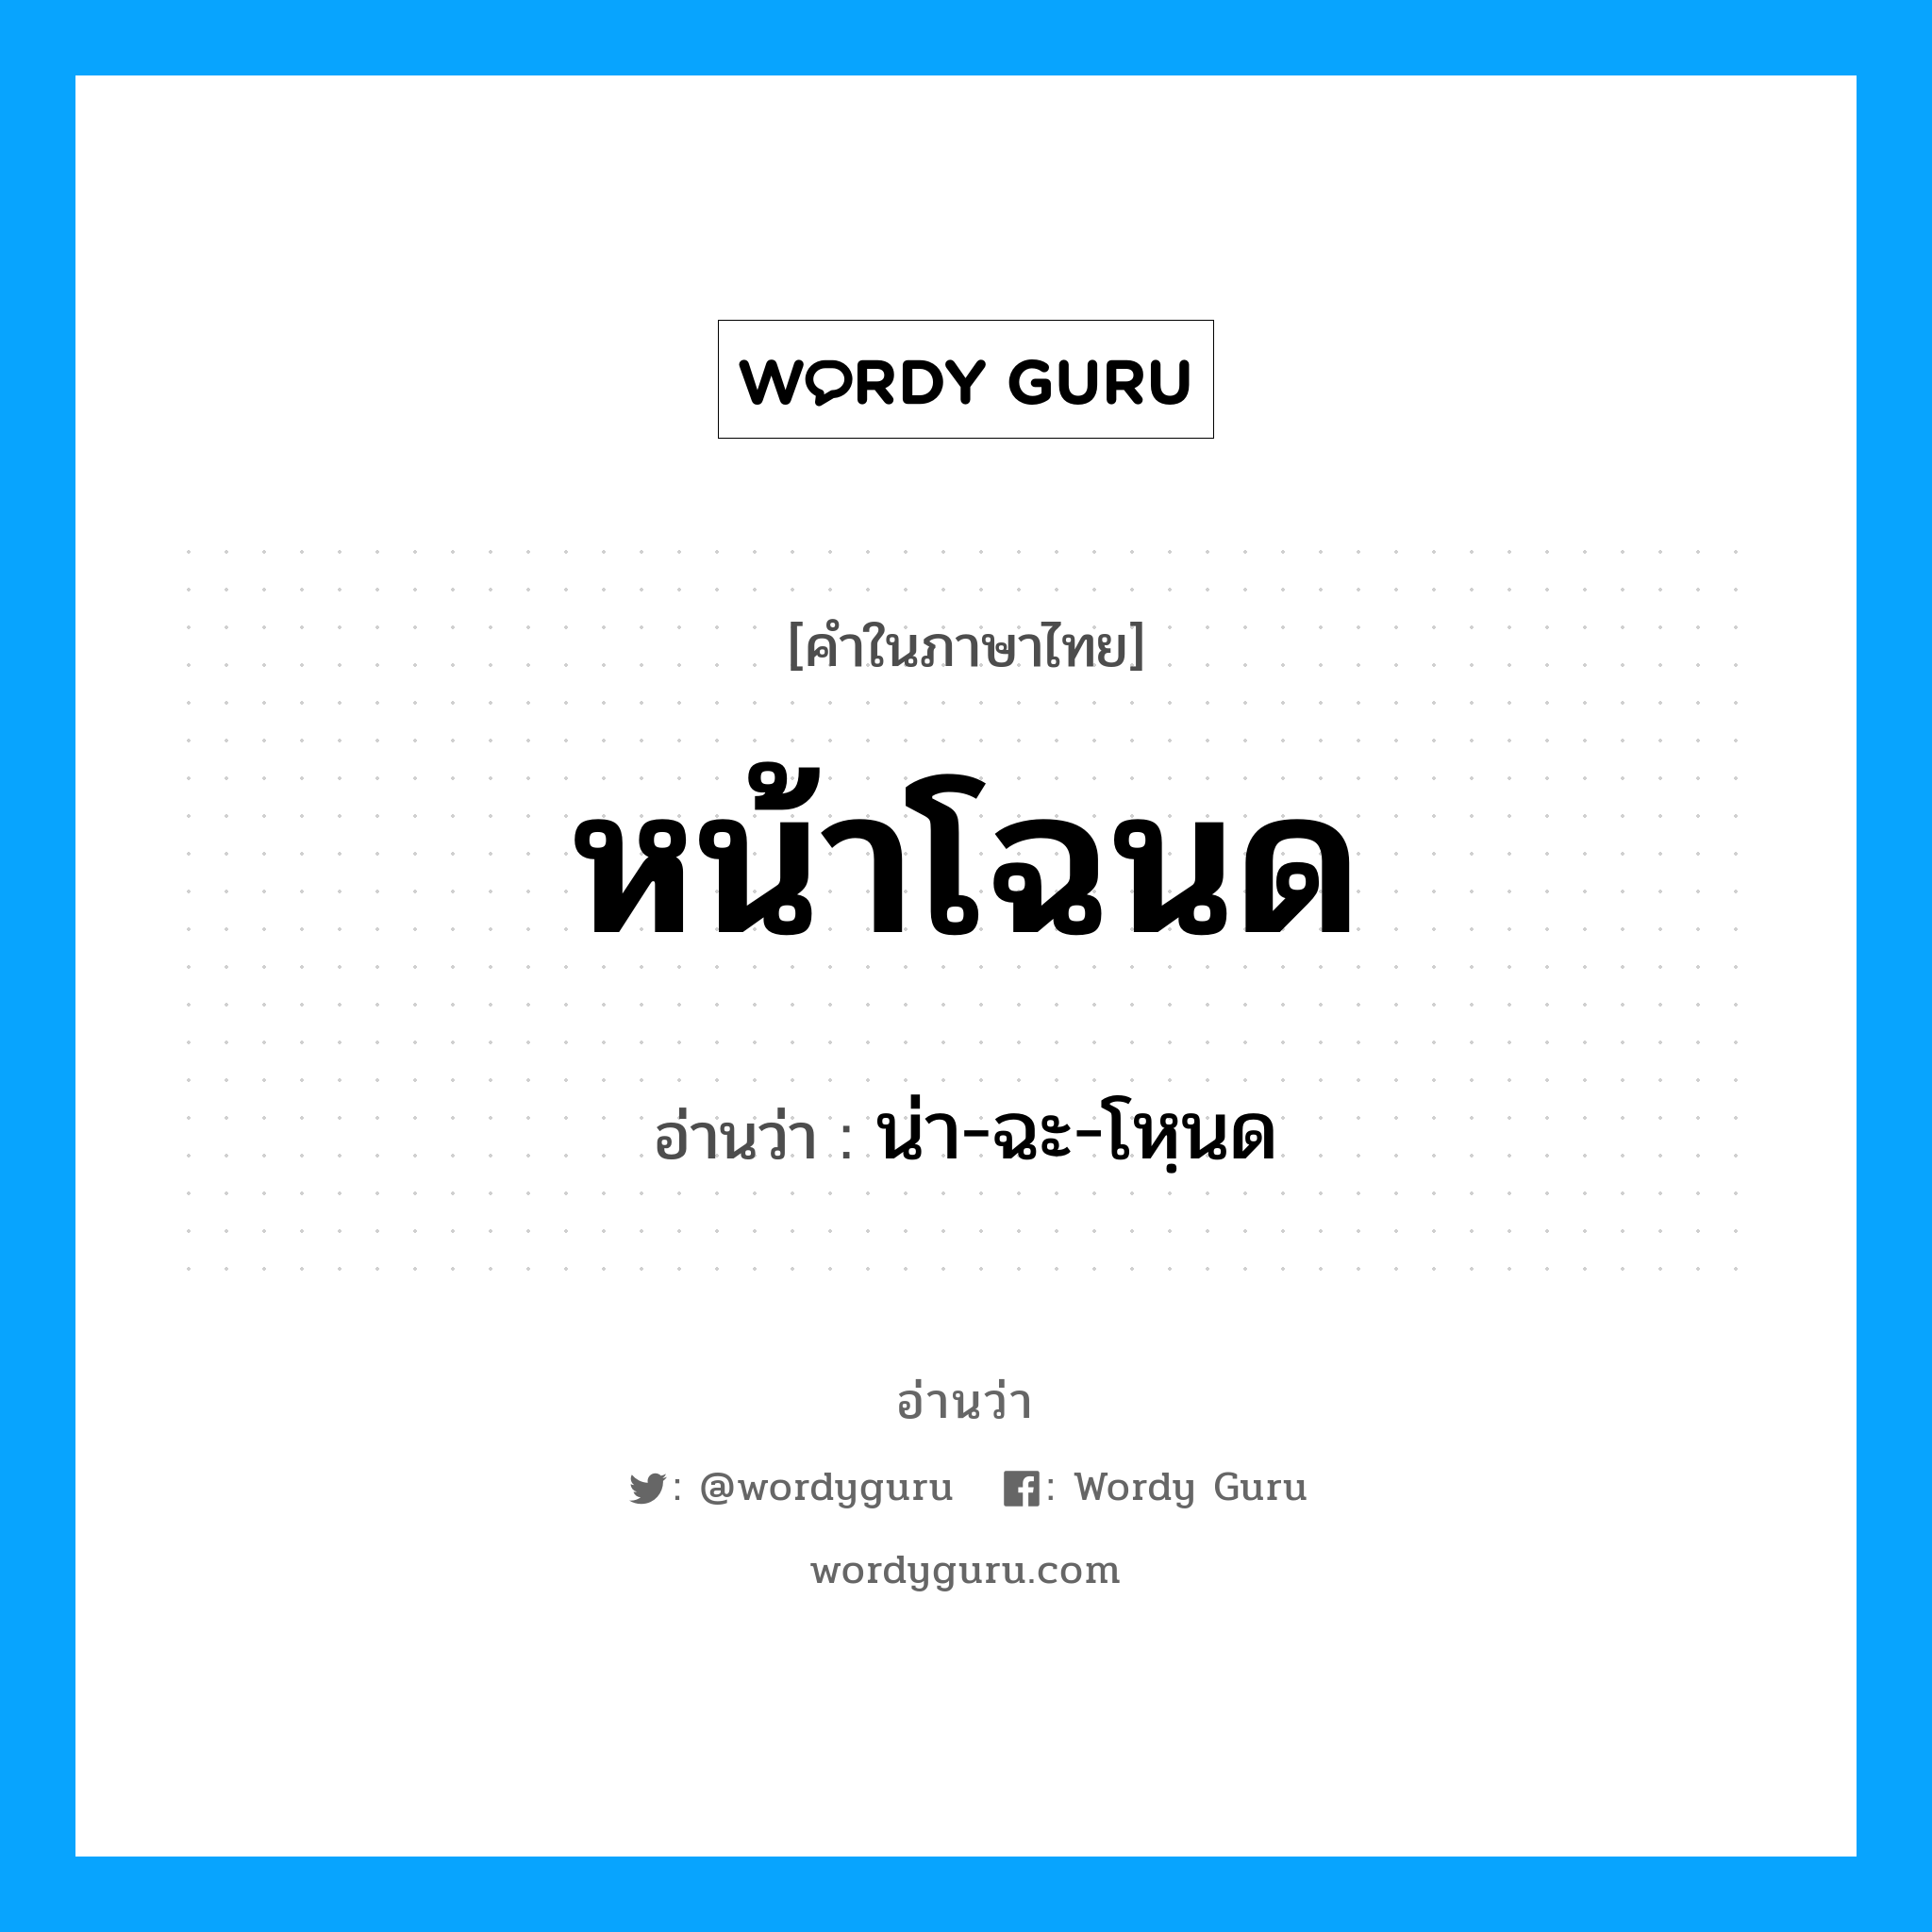 น่า-ฉะ-โหฺนด เป็นคำอ่านของคำไหน?, คำในภาษาไทย น่า-ฉะ-โหฺนด อ่านว่า หน้าโฉนด